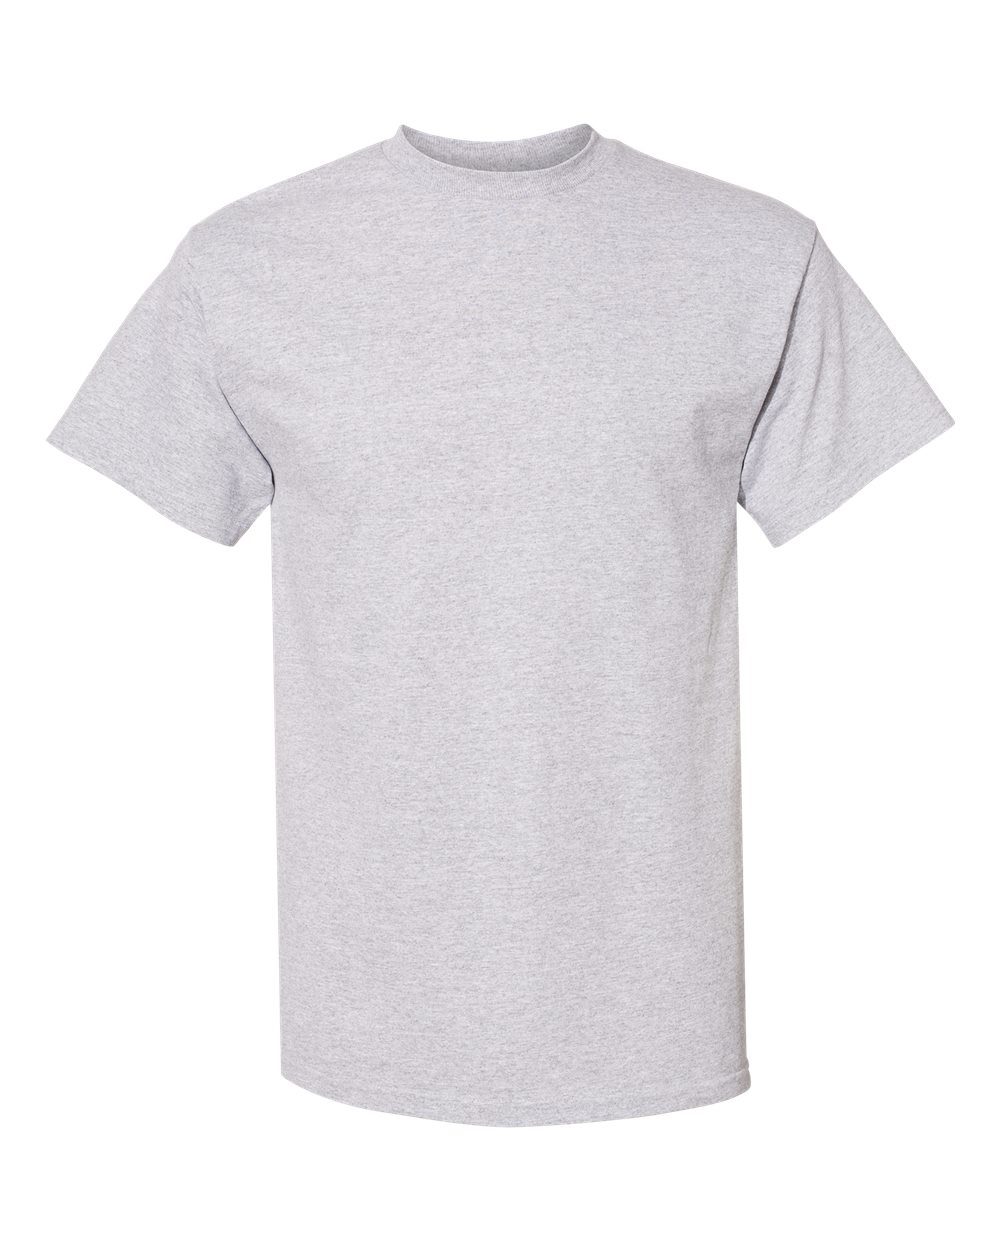 ALSTYLE 1901 - Heavyweight T-Shirt